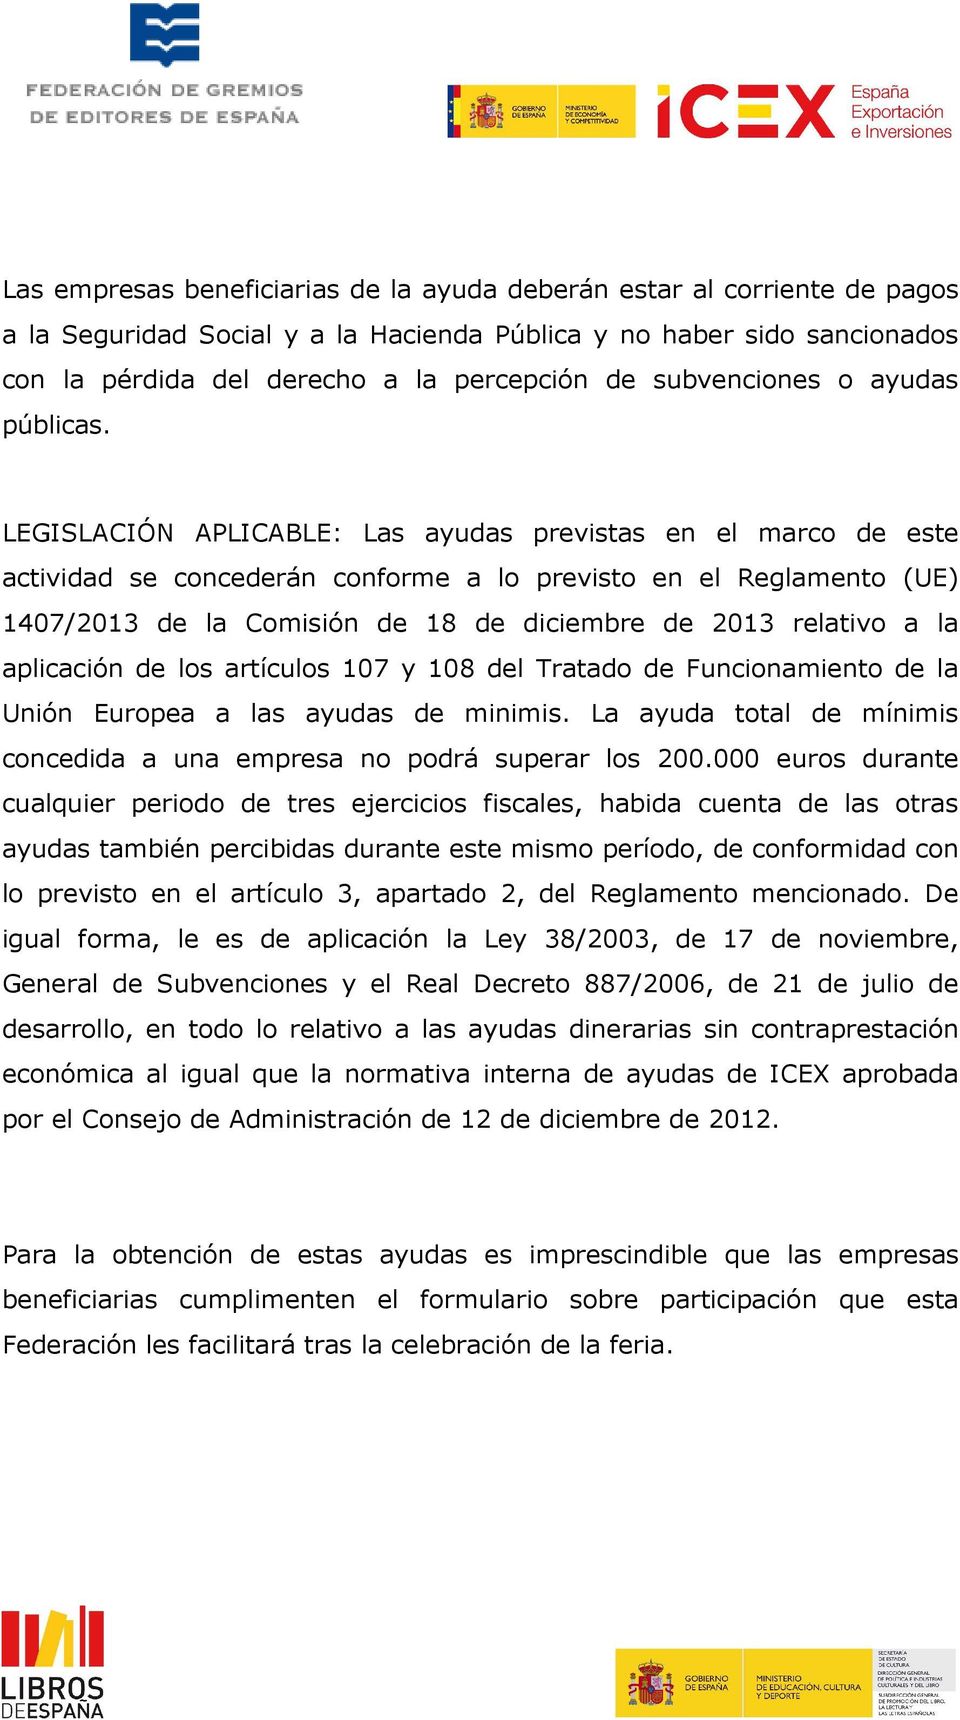 LEGISLACIÓN APLICABLE: Las ayudas previstas en el marco de este actividad se concederán conforme a lo previsto en el Reglamento (UE) 1407/2013 de la Comisión de 18 de diciembre de 2013 relativo a la